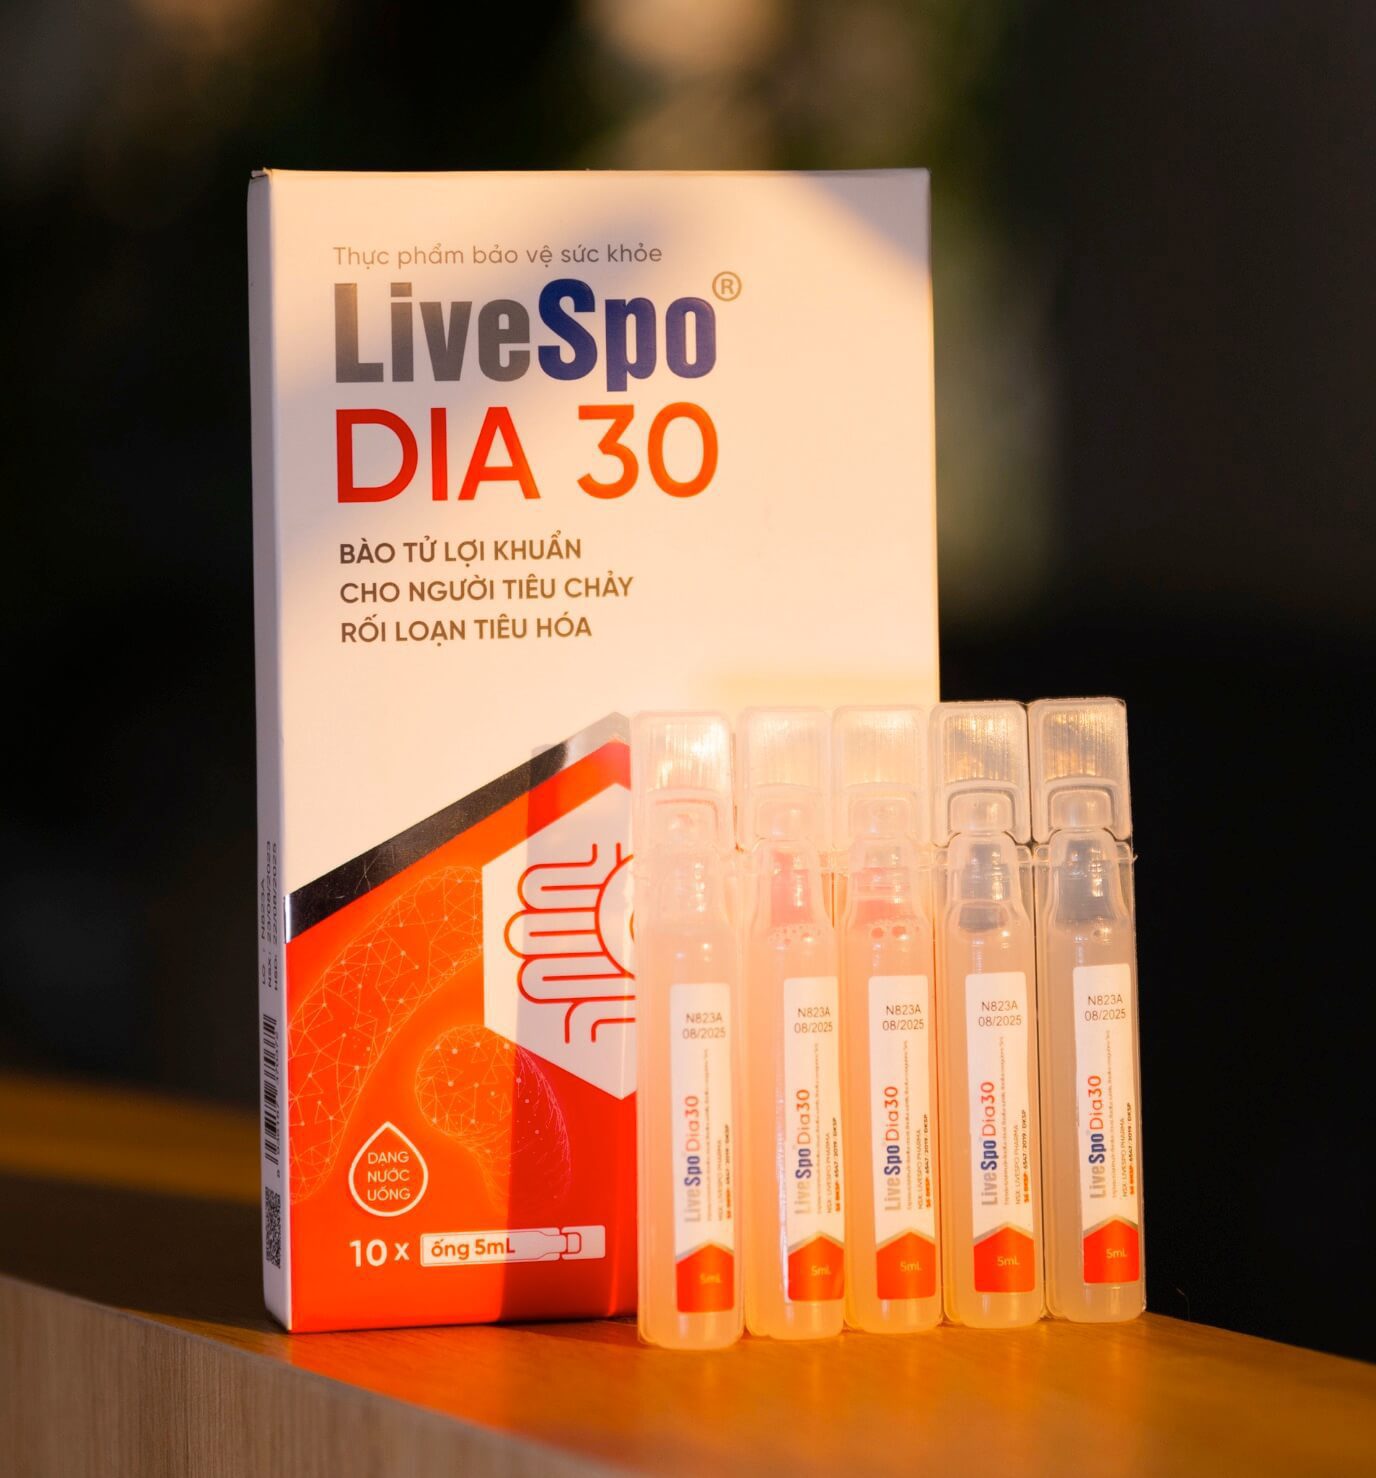 LiveSpo Dia 30 cách sử dụng có tốt không giá bao nhiêu hình 12